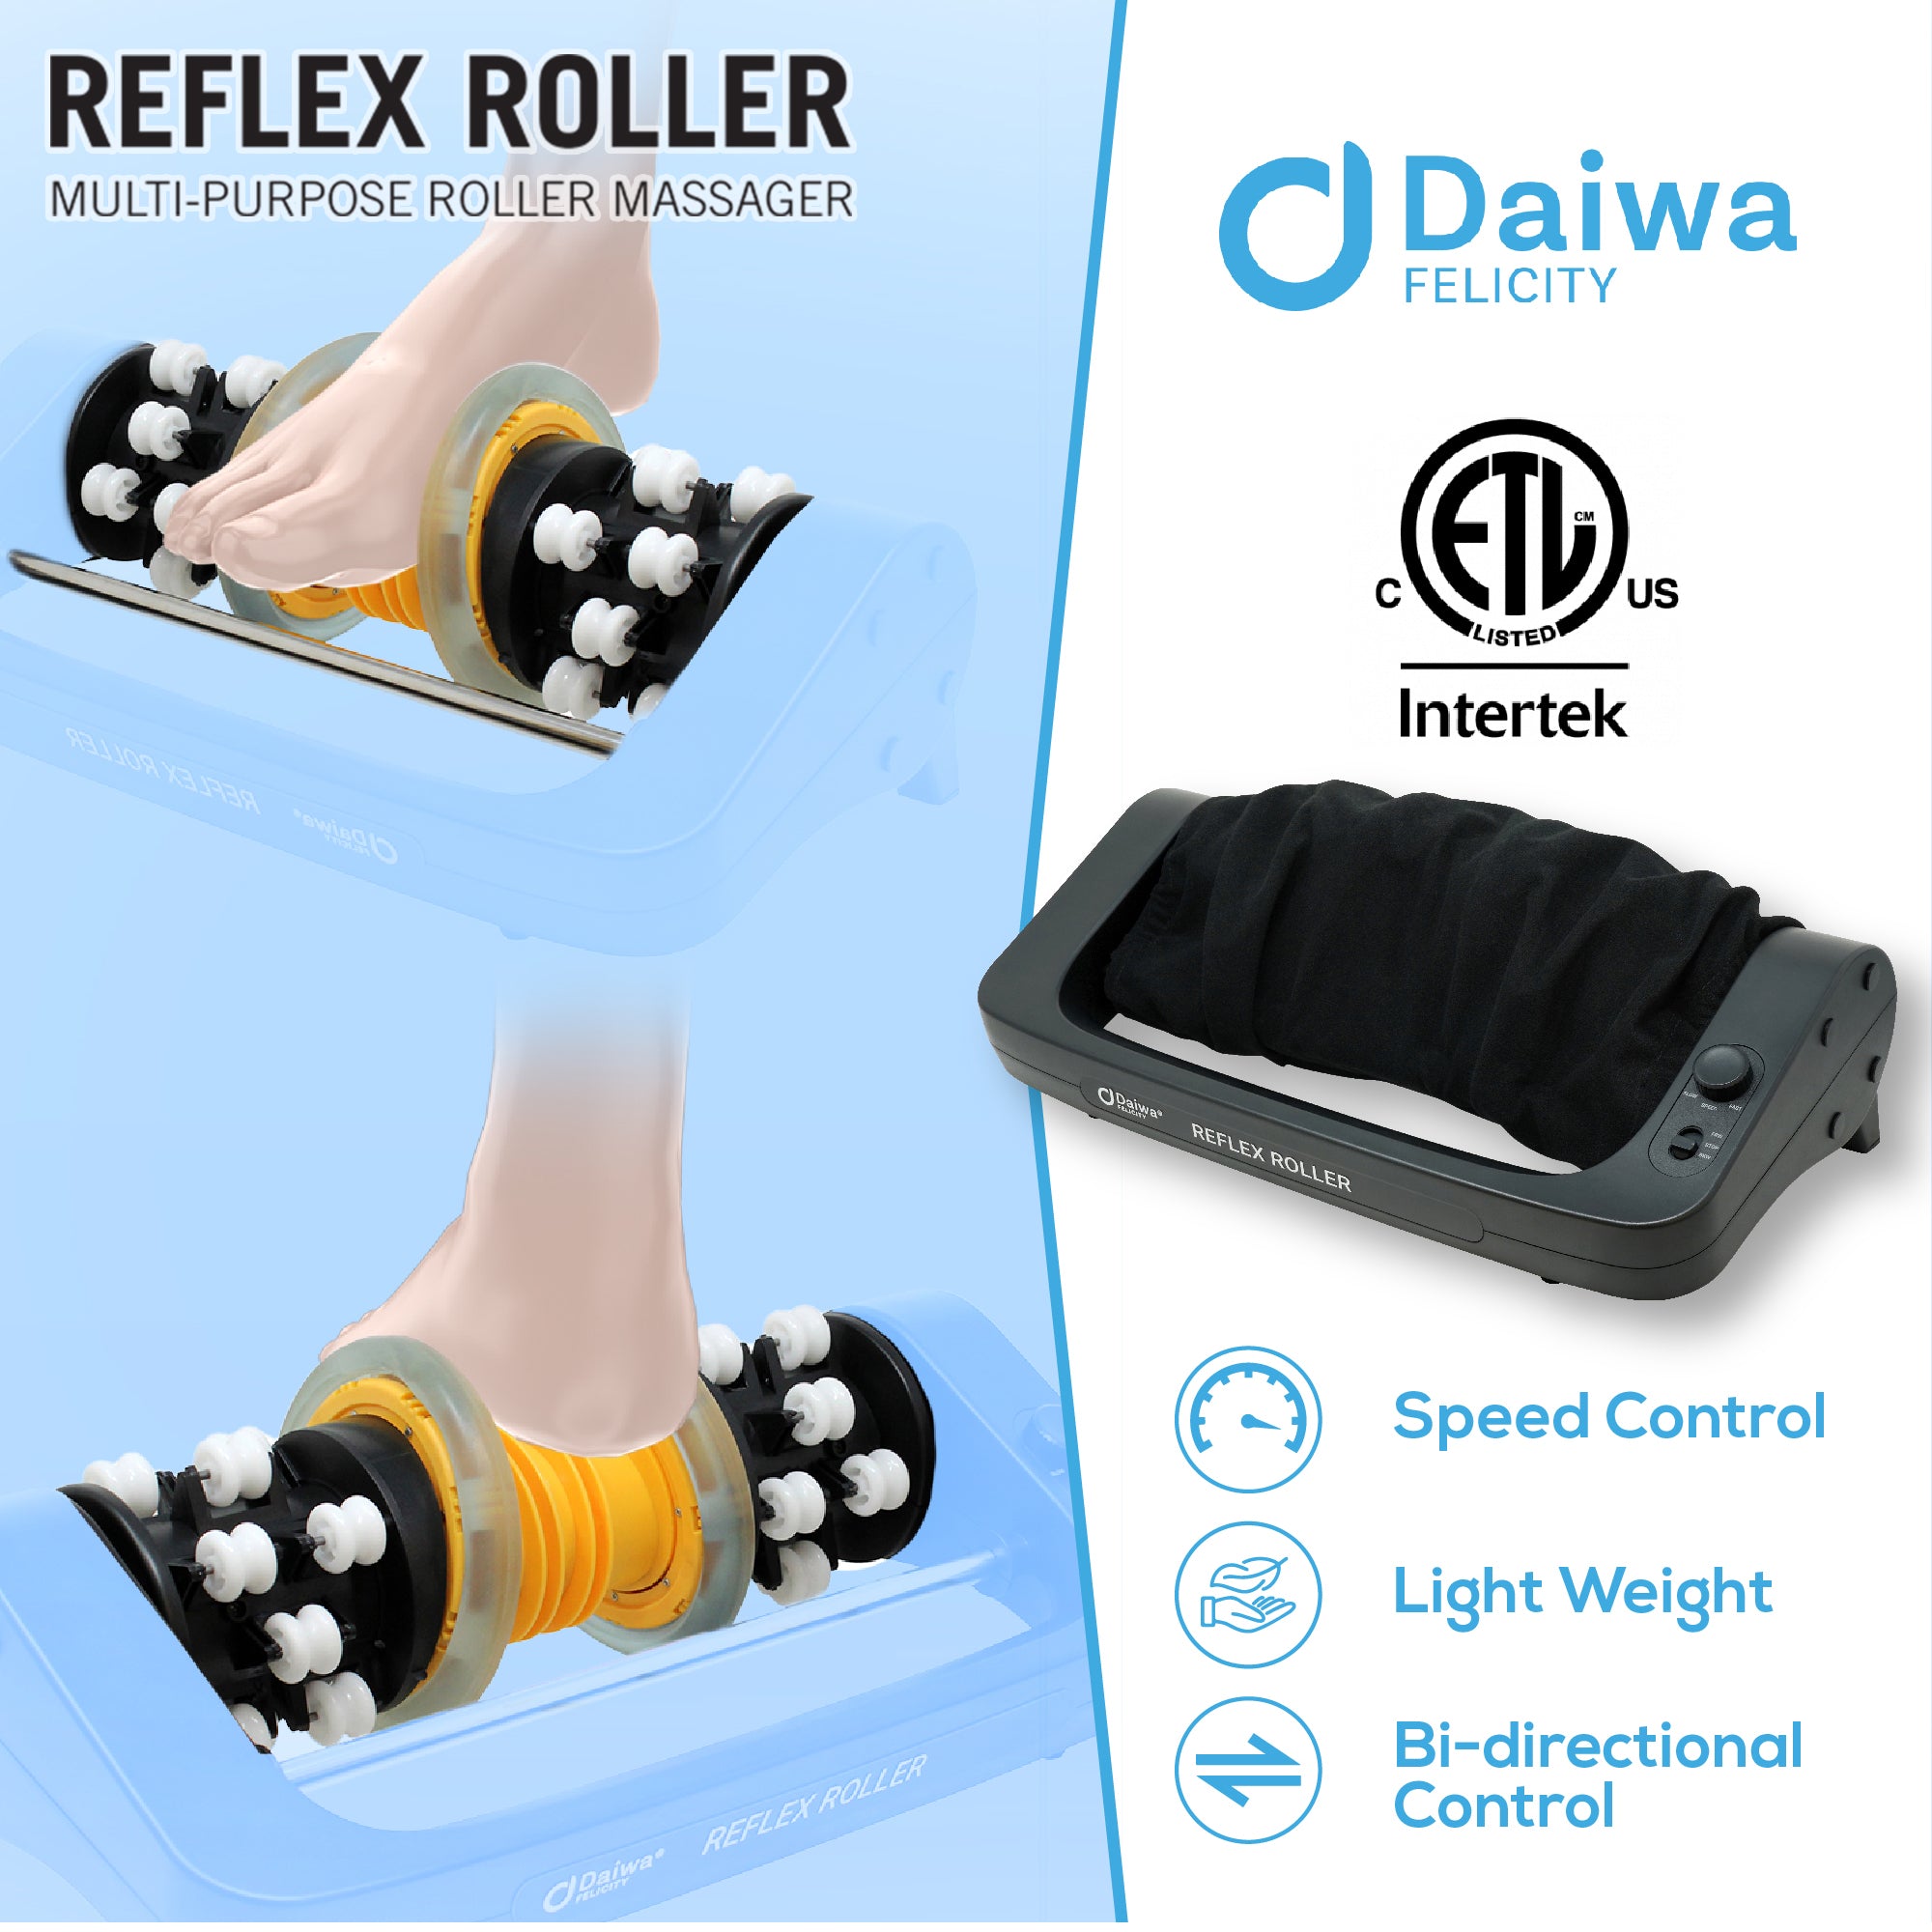 Reflex Roller Electric Foot Massager USJ-101